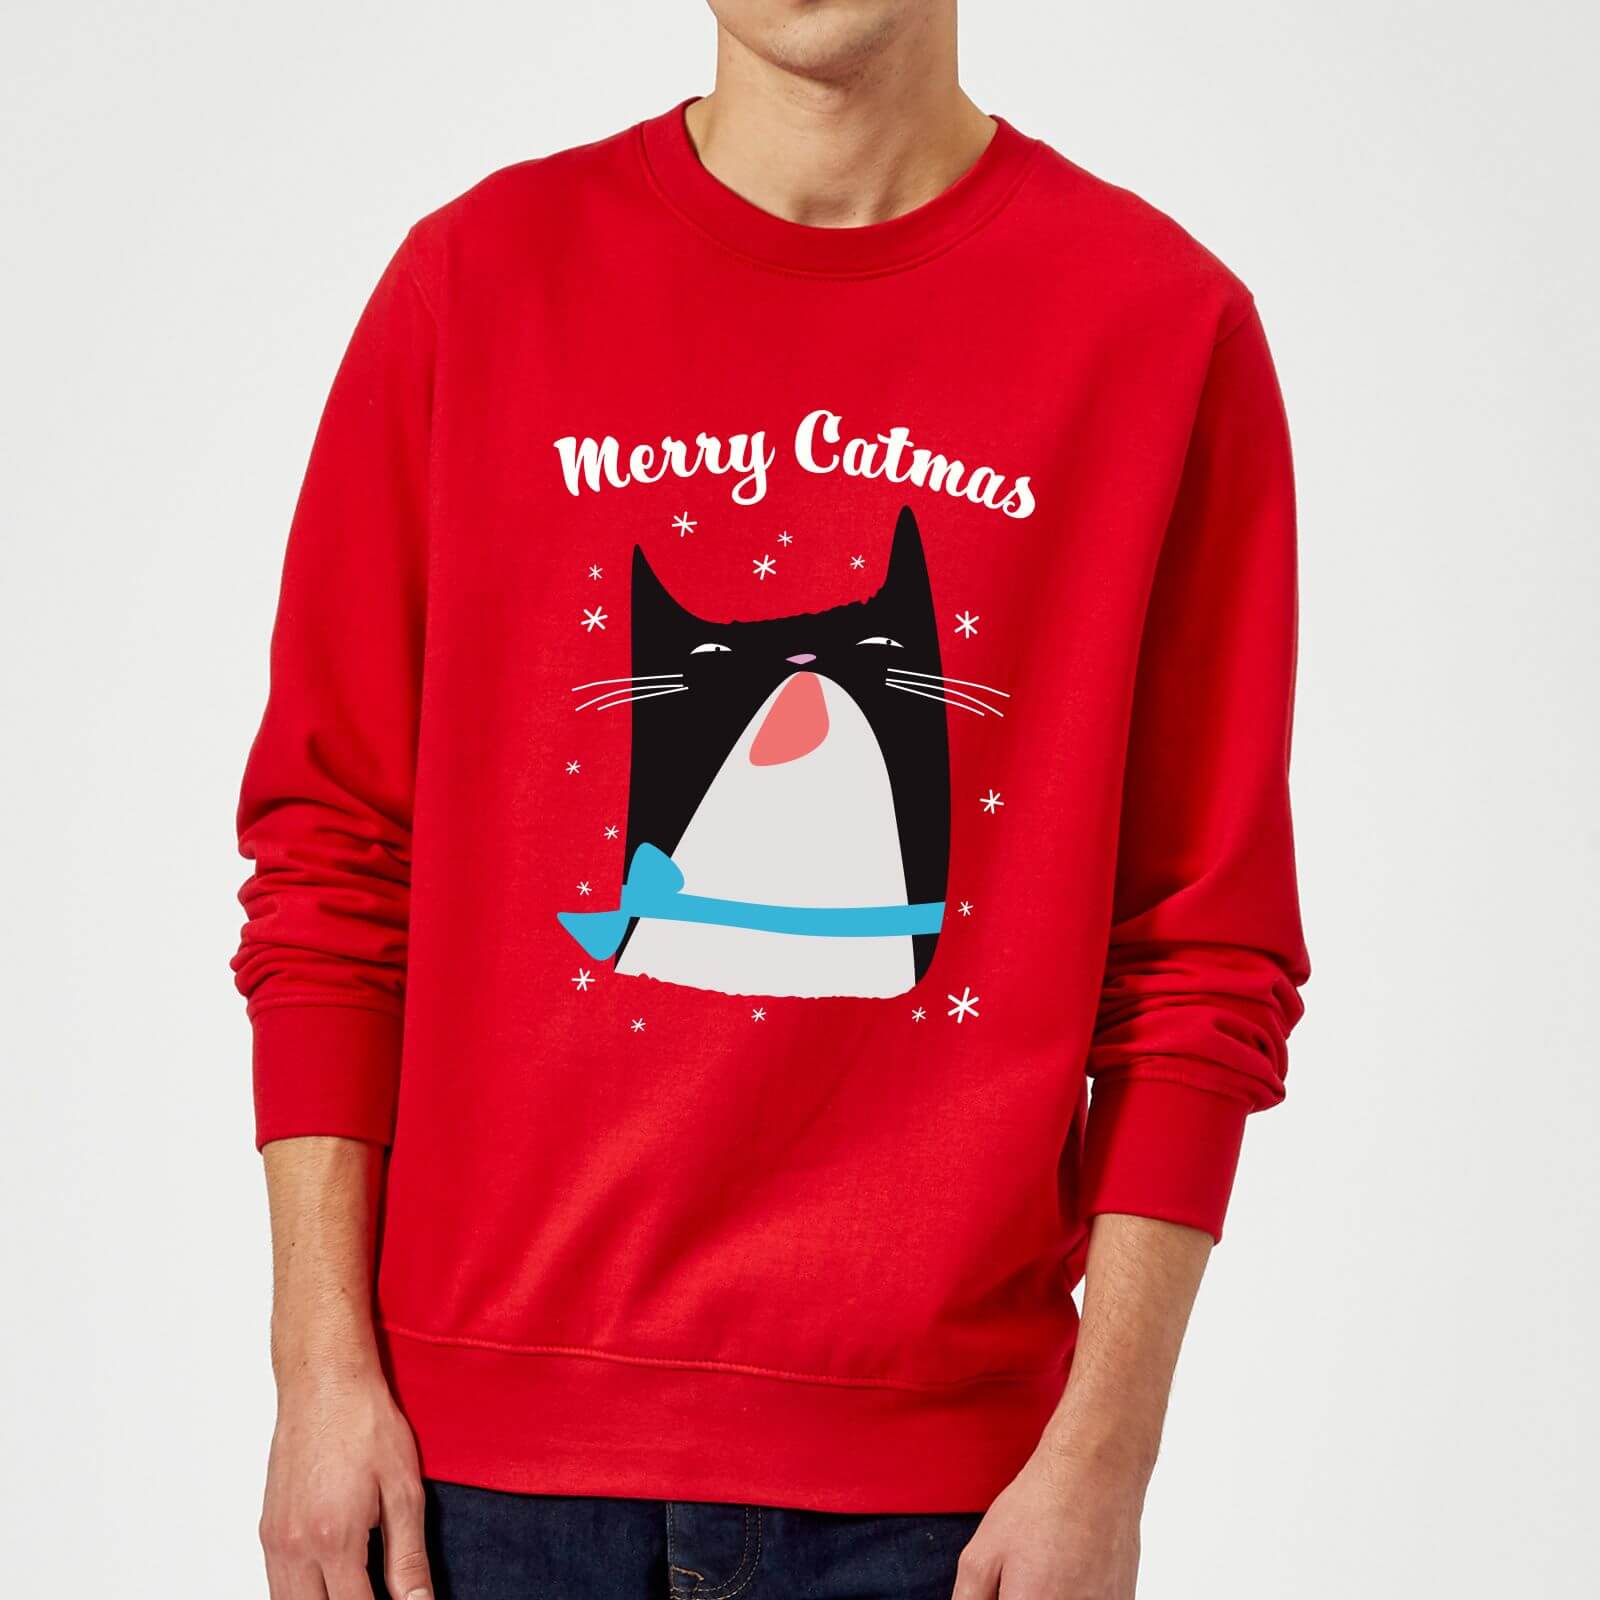 Merry Catmas Sweatshirt - Red - M